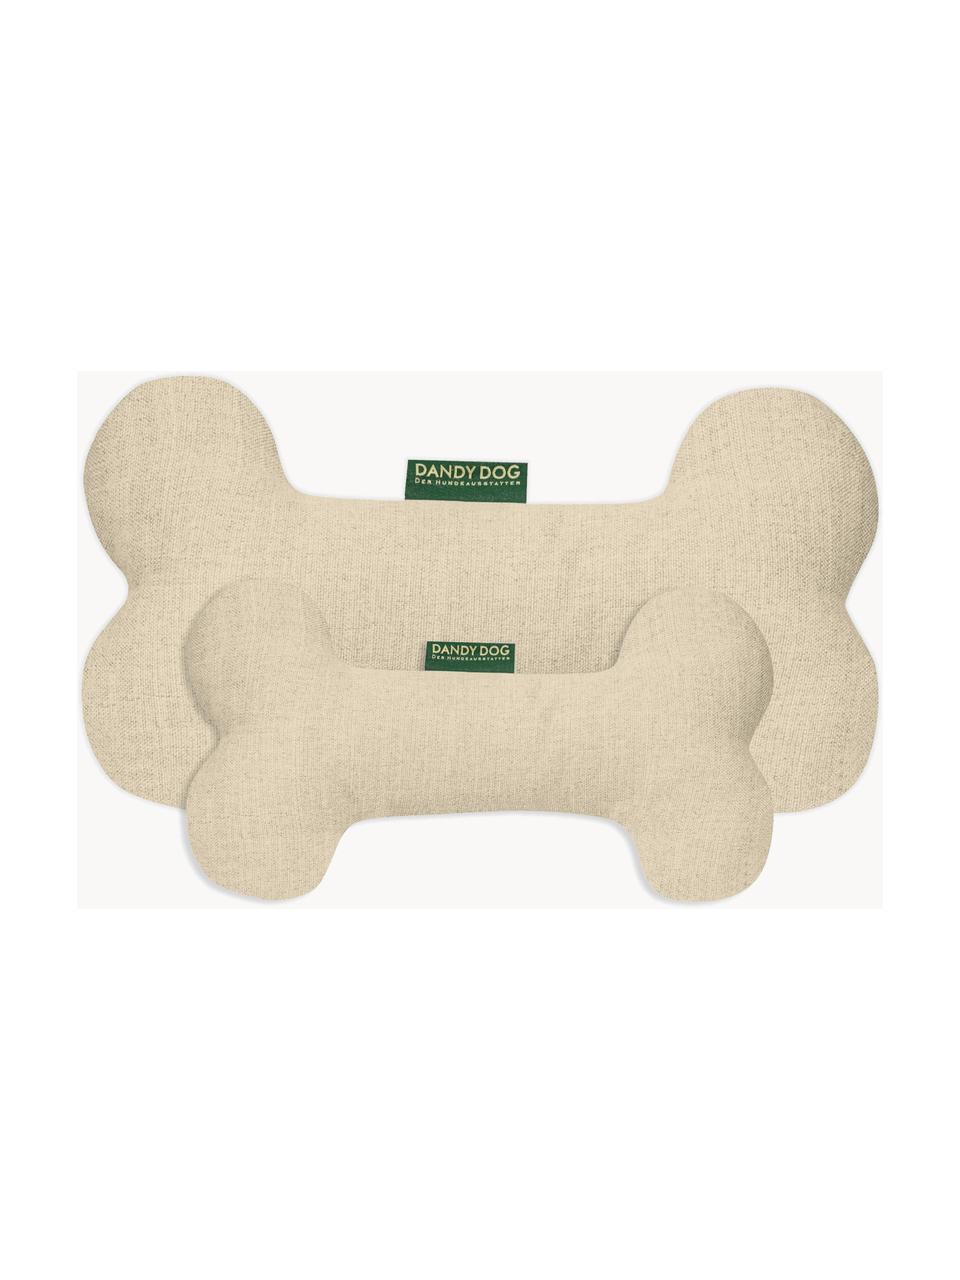 Hundespielzeug Eco in Knochen-Form, verschiedene Grössen, Bezug: 100 % Polyester Der strap, Hellbeige, B 35 x H 20 cm